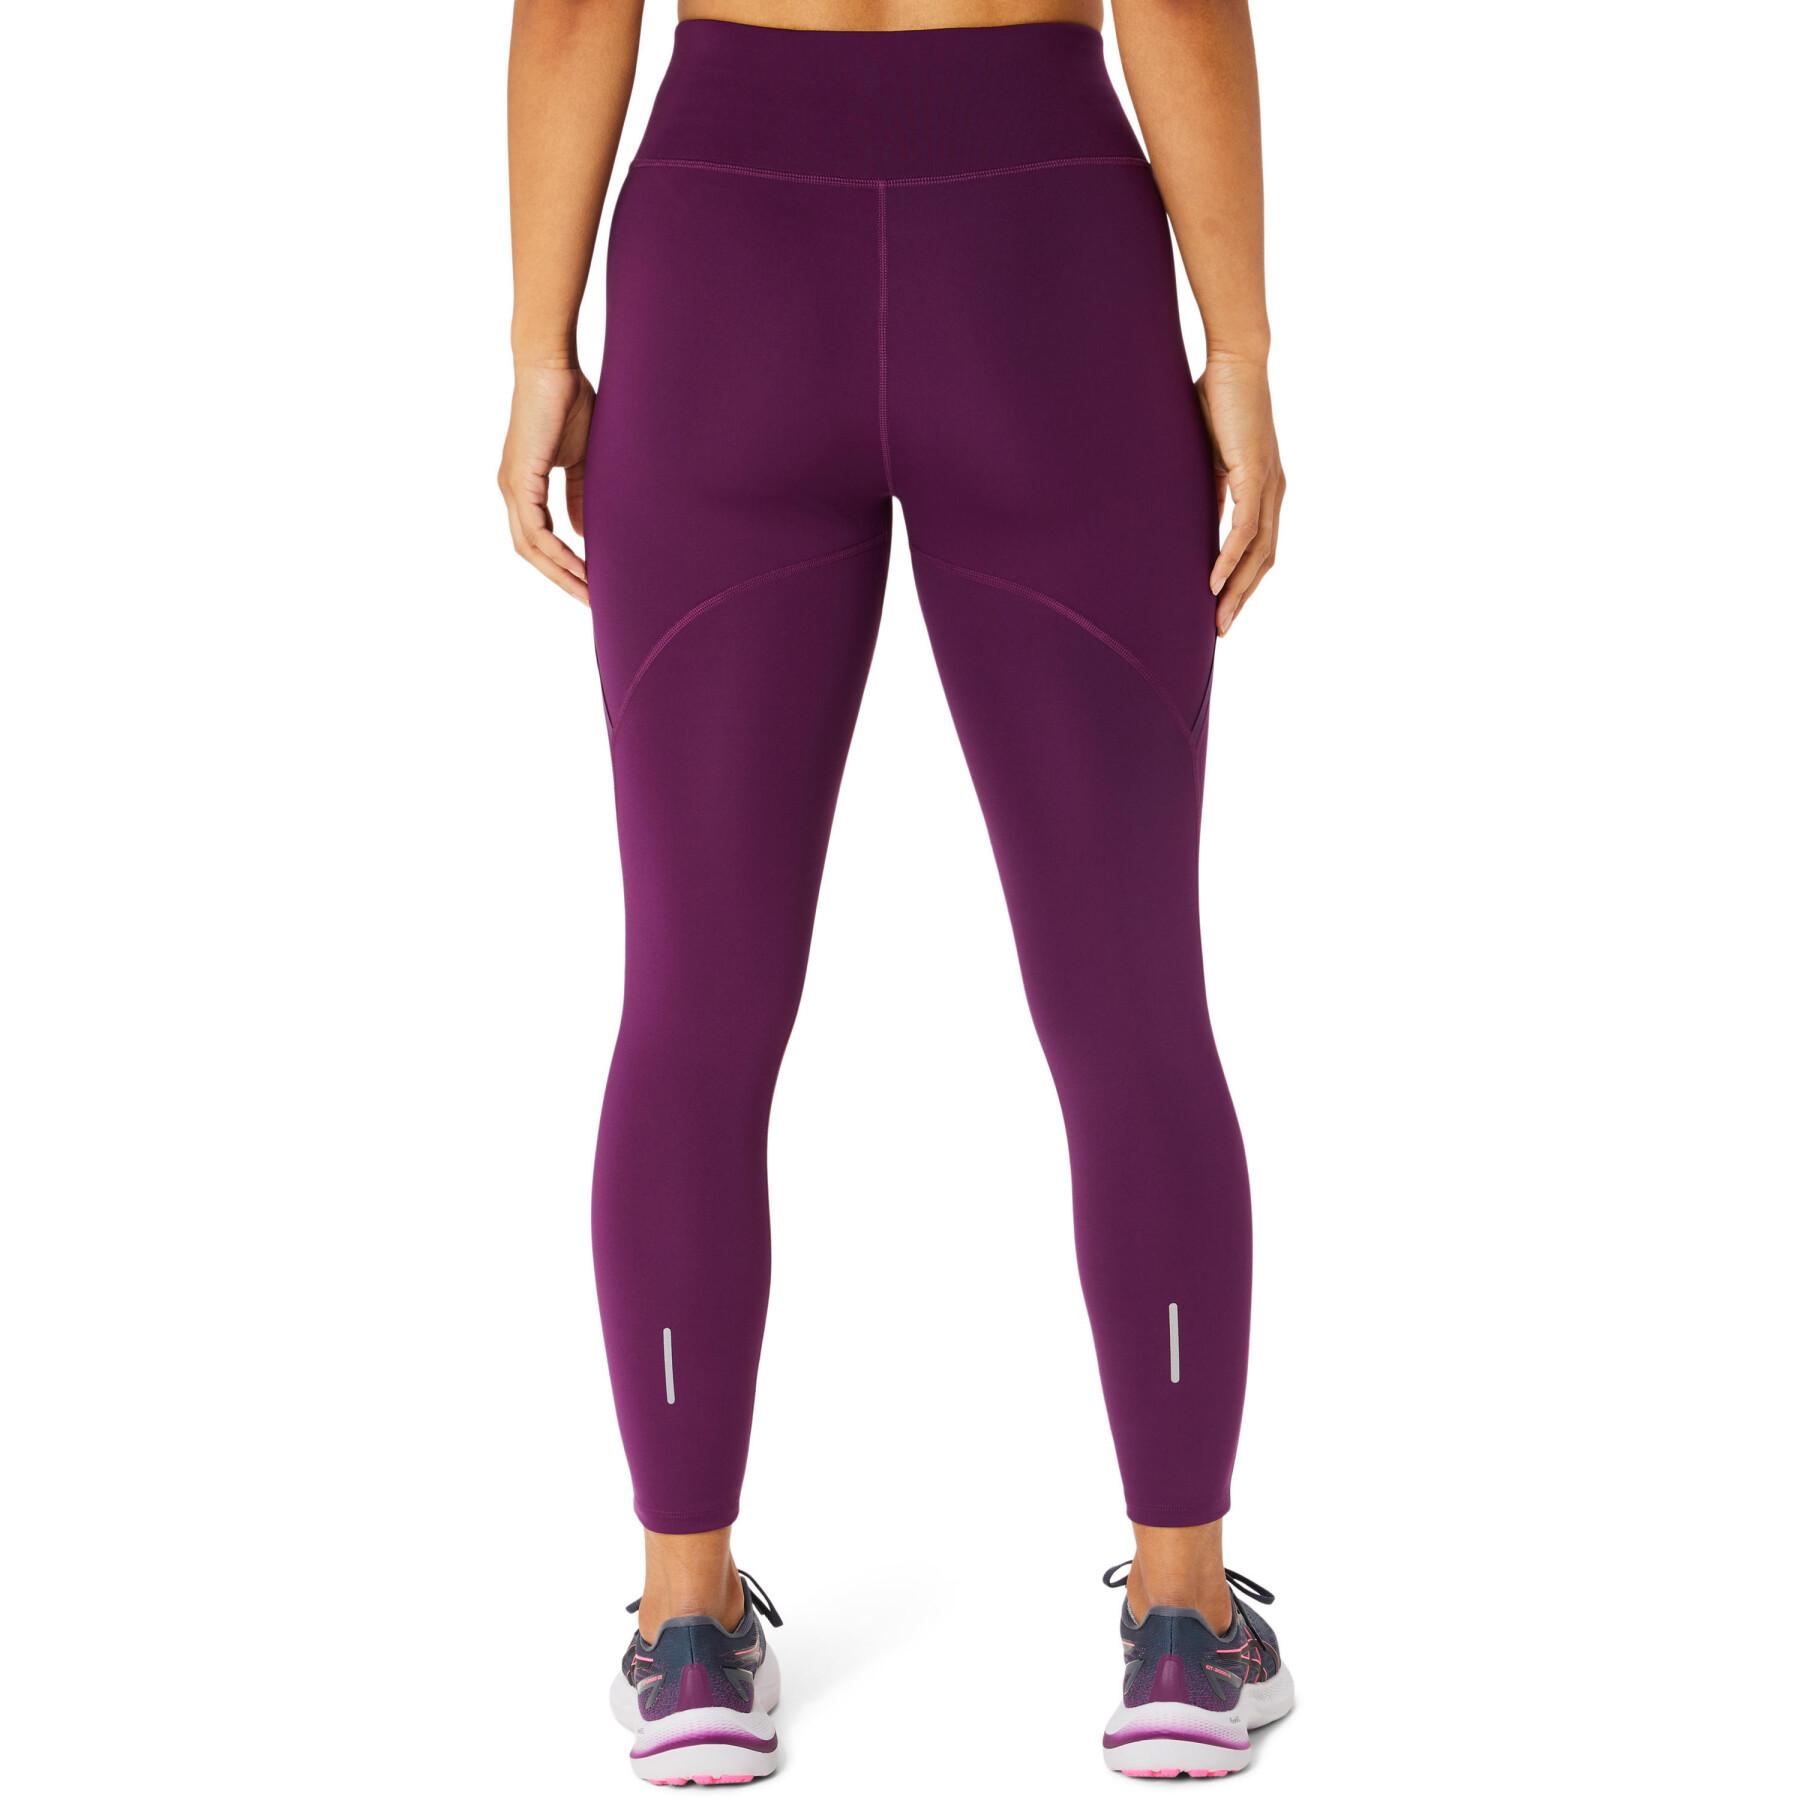 Women's high-waisted running leggings Asics